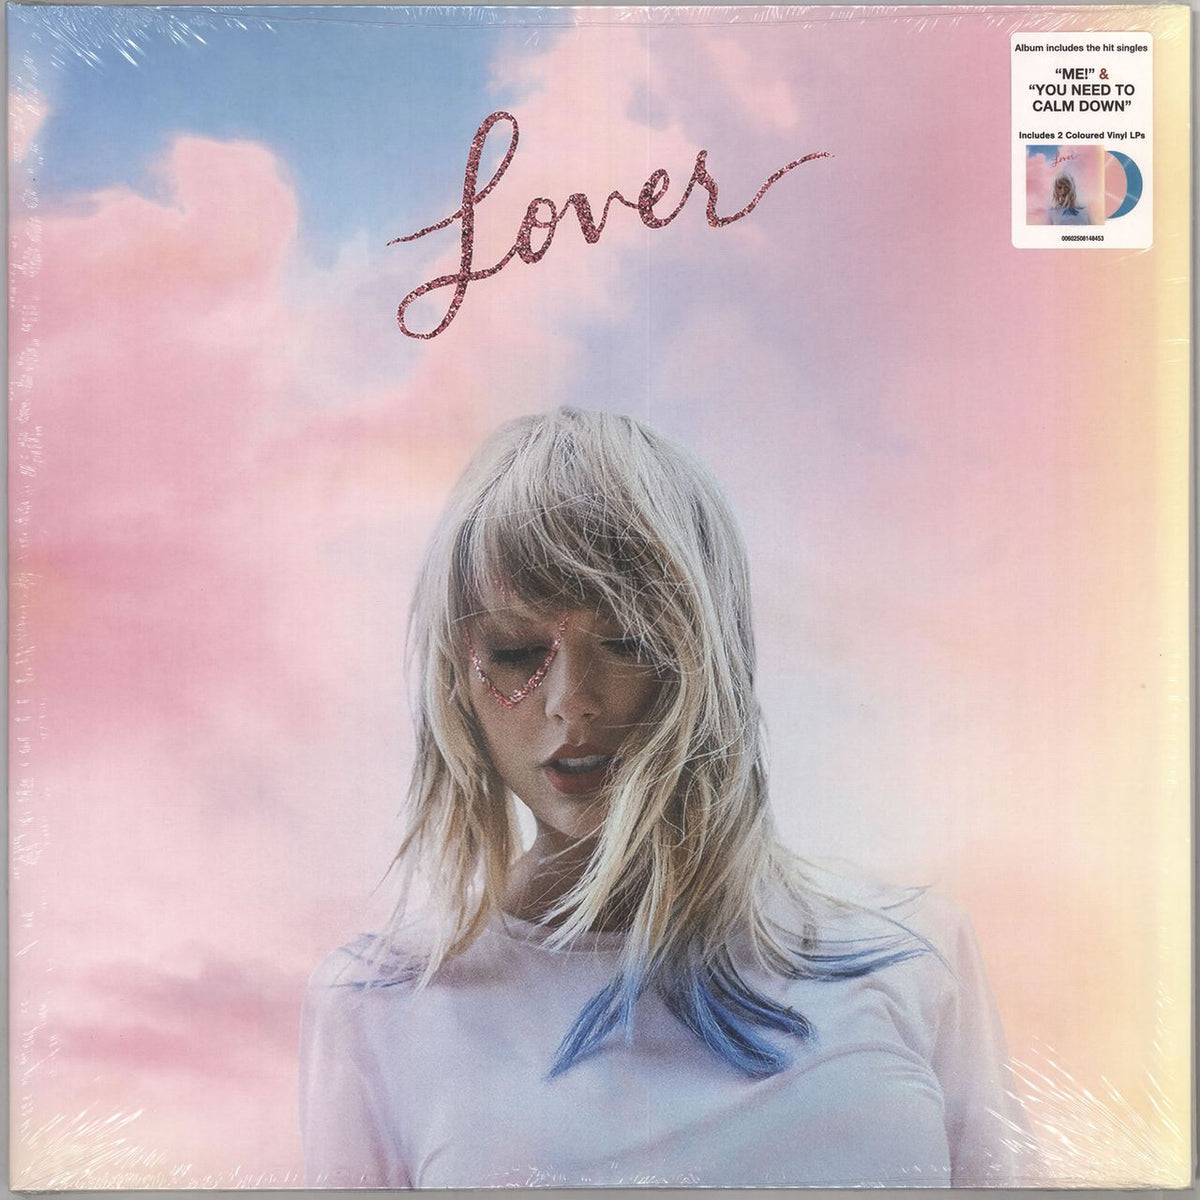 Taylor Swift Lover - Pink & Blue Vinyl - Sealed US 2-LP vinyl set 